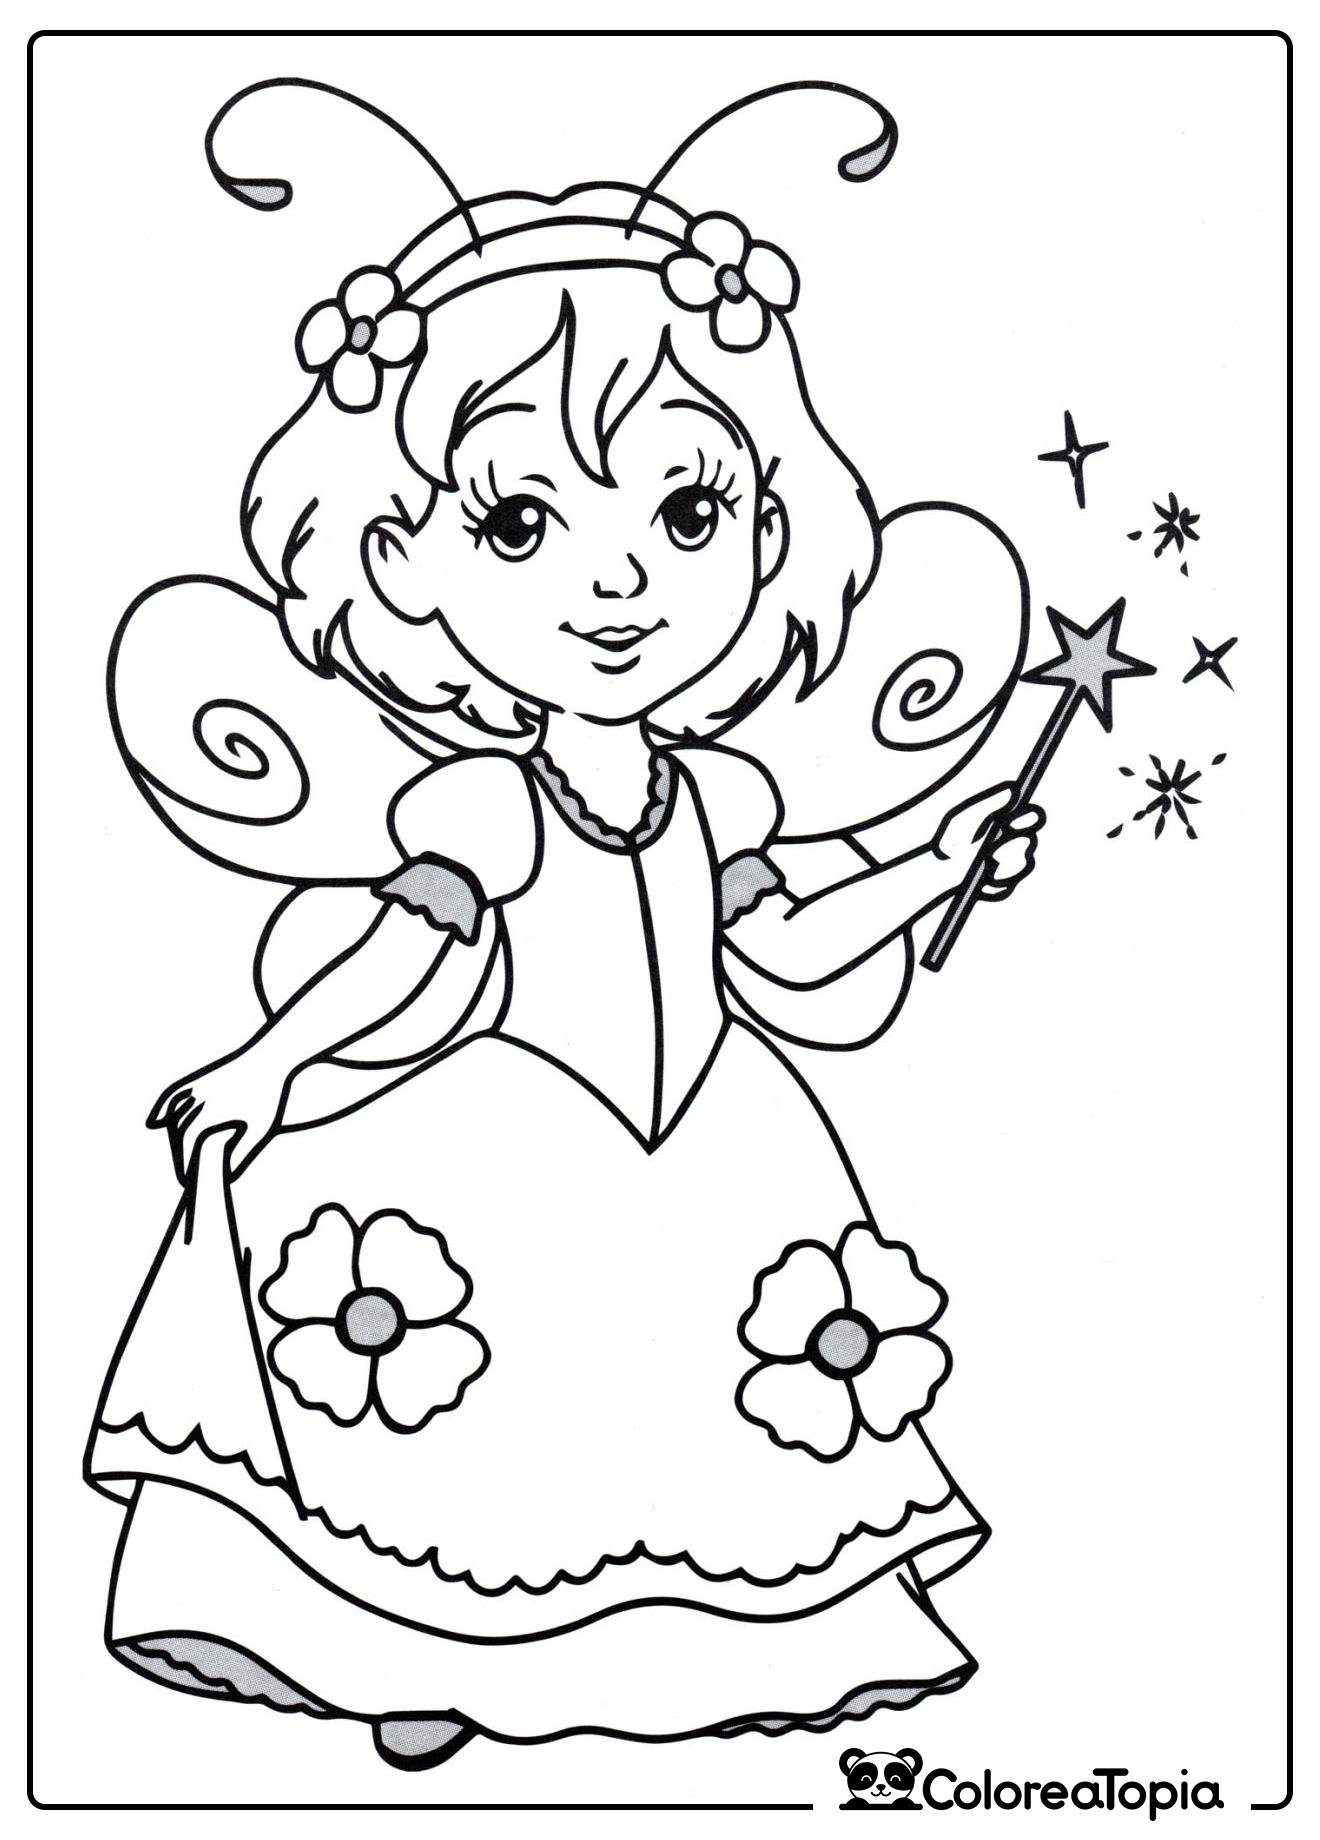 Princesa en traje de hada - dibujo para colorear